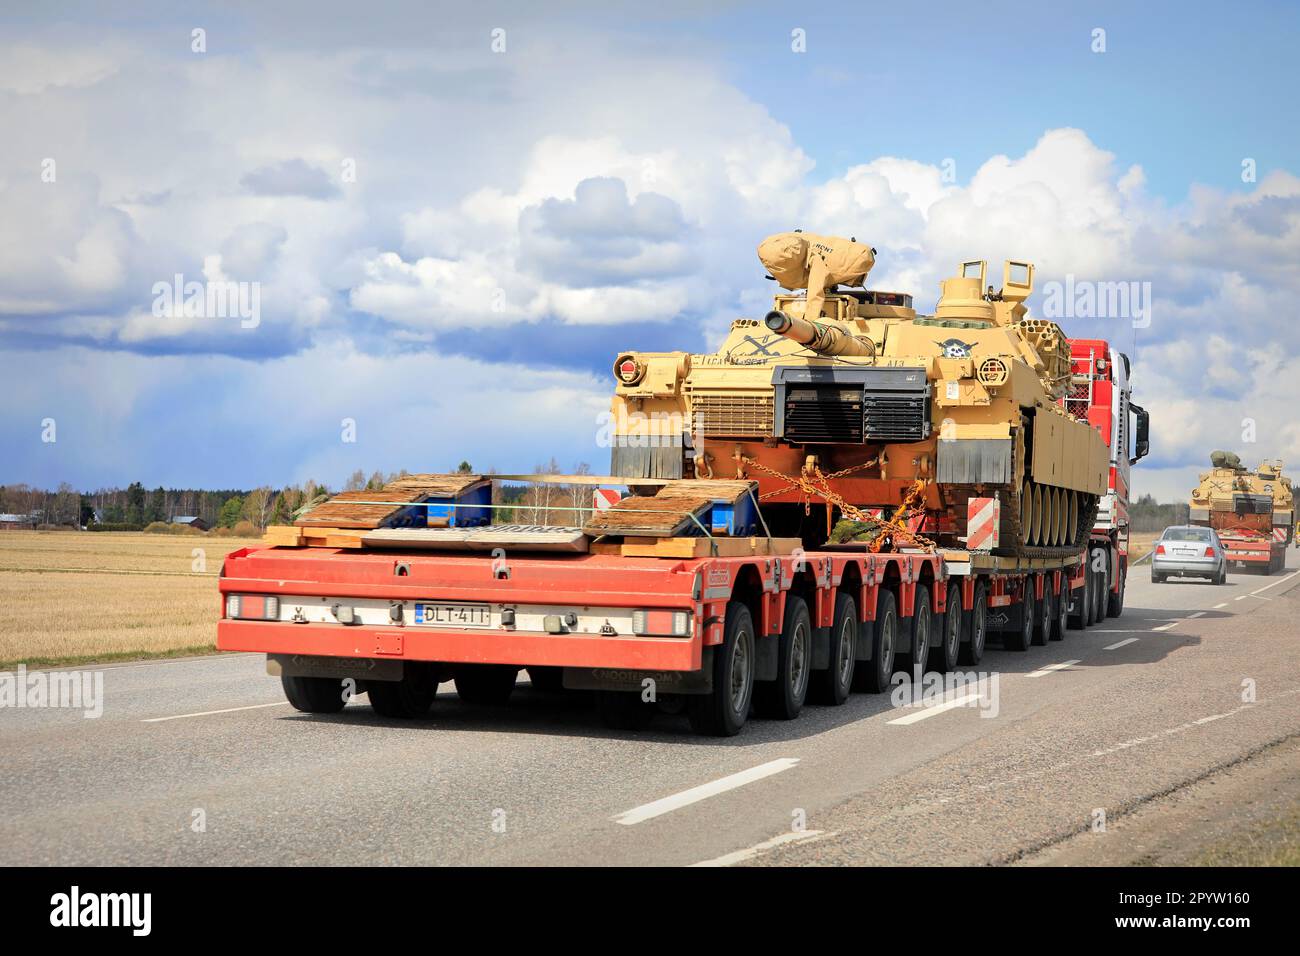 Außergewöhnlicher Ladetransport des Militärpanzers US Army M1 Abrams im Verkehr. Fahrzeugkonvoi mit drei Panzertransporten. Aura, Finnland. 28. April 2023. Stockfoto